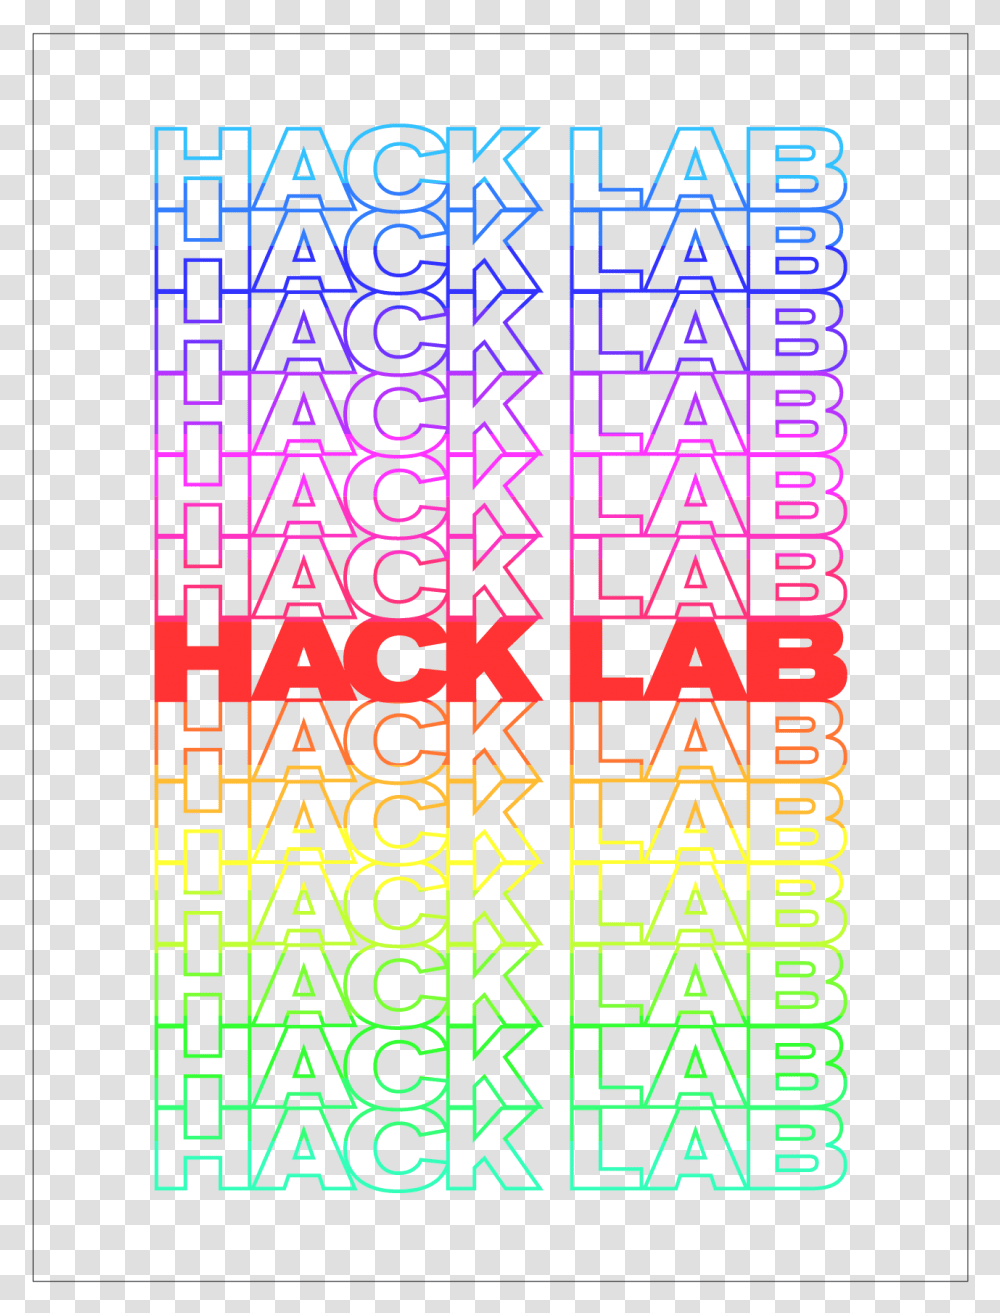 Hack Lab Spring Internship Applications Graphic Design, Number, Word Transparent Png